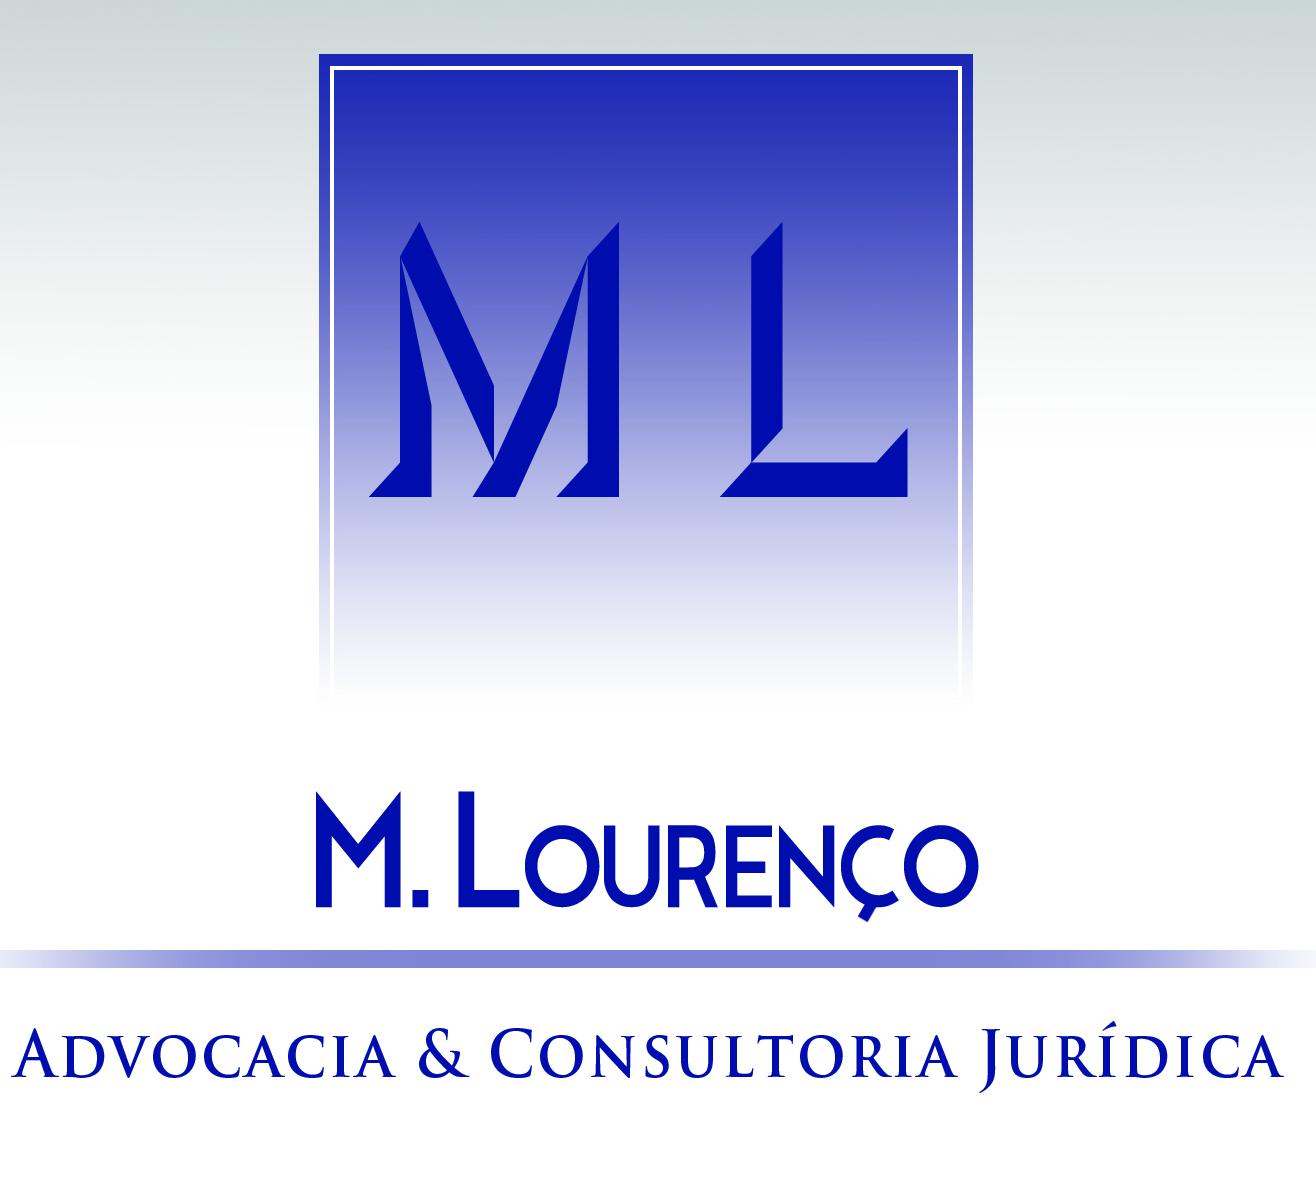 M. Lourenço Advocacia & Consultoria Jurídica